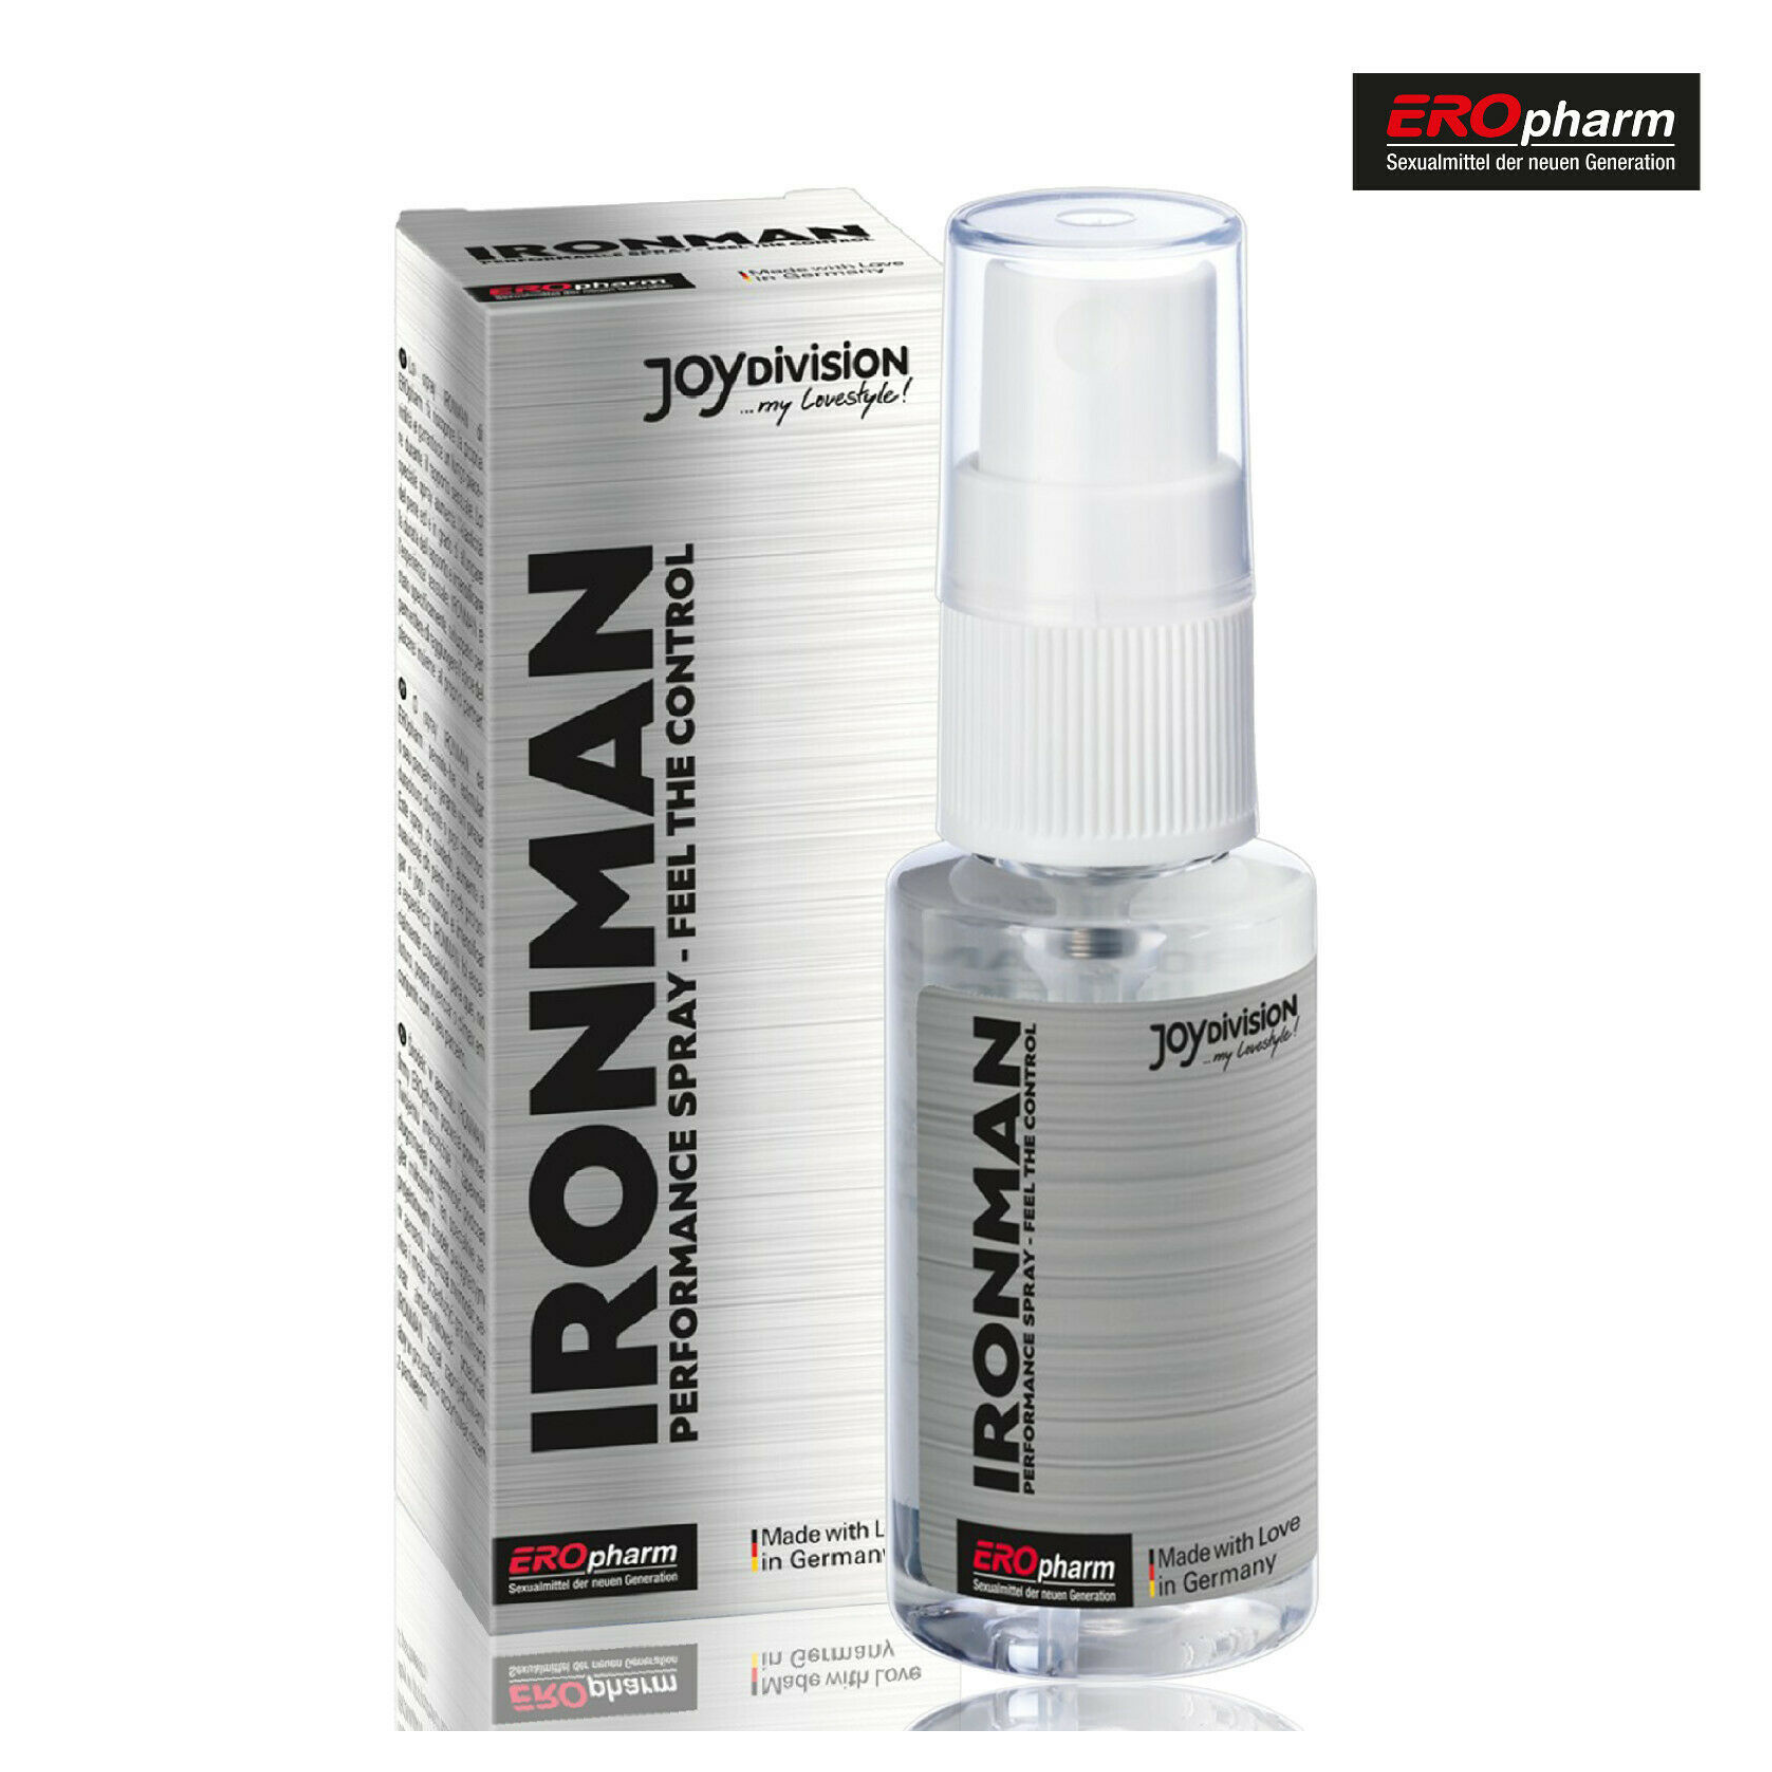 EJAKULIACIJĄ ATITOLINANTIS PURŠKIKLIS “JOYDIVISION IRONMAN PERFORMANCE SPRAY” - 30 ML  
“Joydivision Ironman Performance Spray” - purškiklis, leidžiantis mėgautis nepamirštamu seksu. 
Šis  specialiai vyrams  sukurtas purškiklis, praturtintas  ženšeniu ir bambuku .  
Dėka šių natūralių ingredientų, purškiklis: 
Stiprina vyriškumą; 
Padidina varpos elastingumą; 
Prailgina seksą; 
Sustiprina pojūčius sekso metu. 
Mėgaukitės nuostabiu, ilgiau trunkančiu seksu  kartu su savo pertneriu! 
Sudėtyje purškiklis neturi lidokaino ir benzokaino.